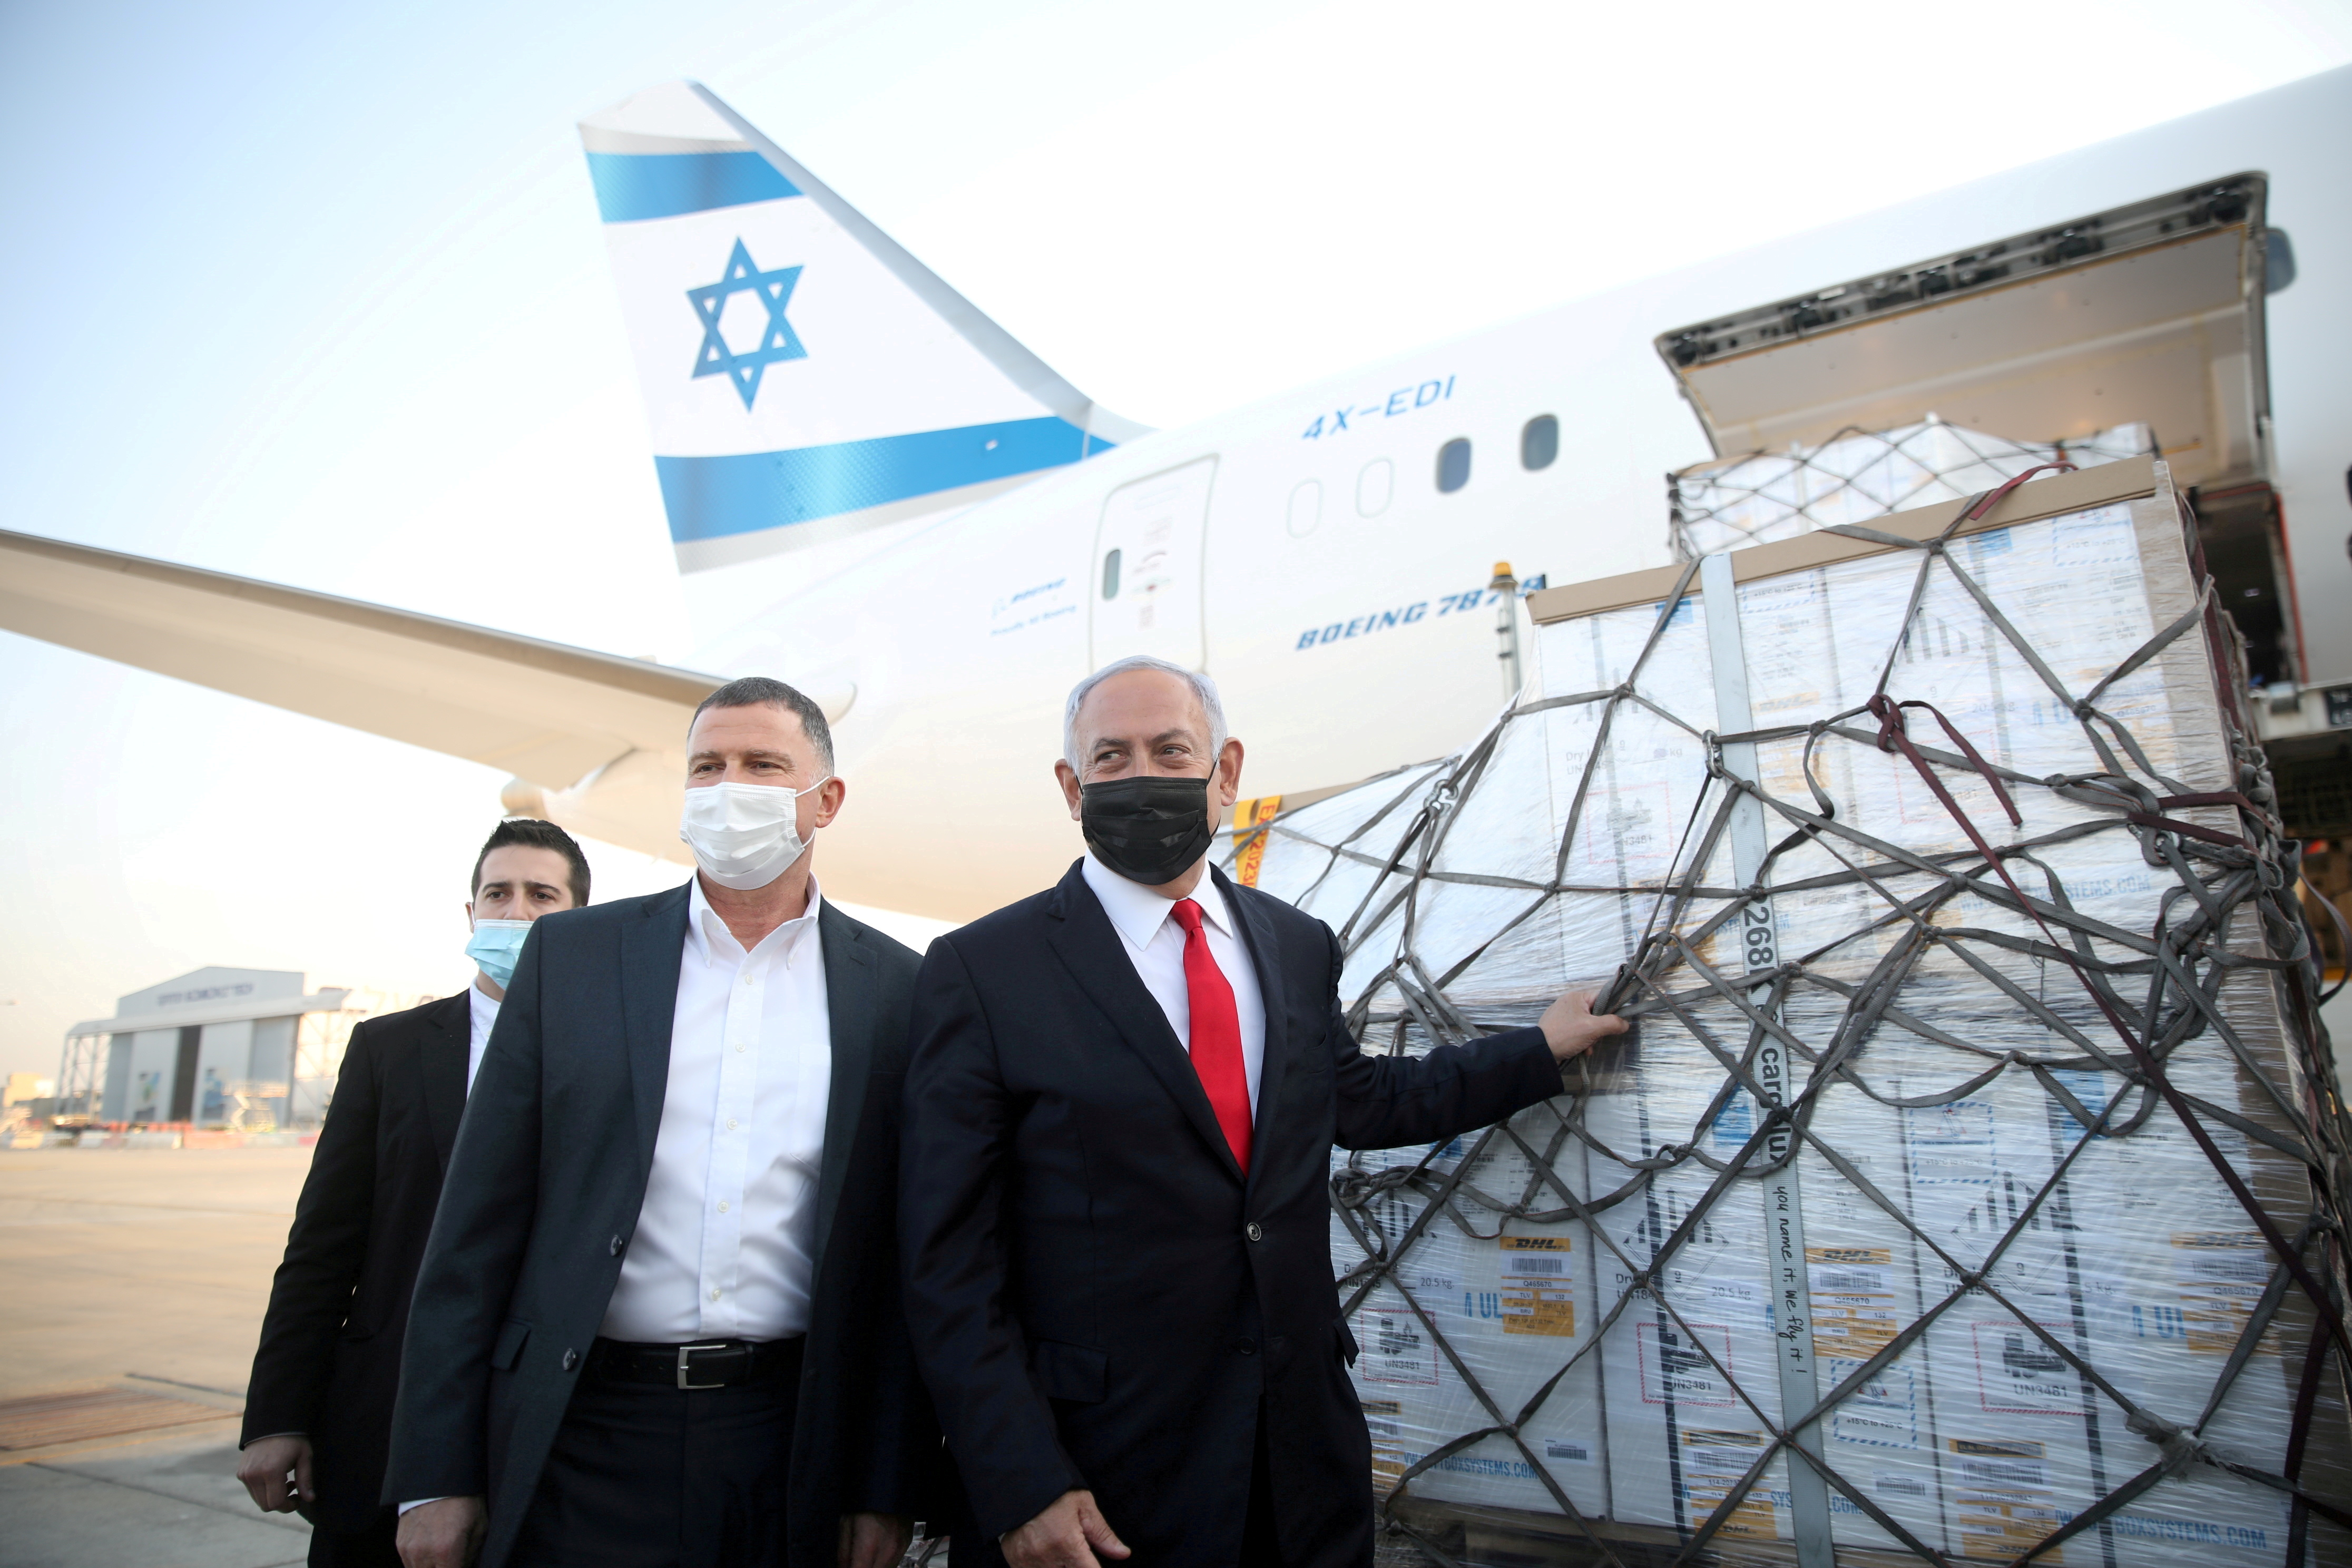 El primer ministro de Israel Benjamin Netanyahu espera lograr un acuerdo con Argentina para la producción local de la vacuna - Motti Millrod/Pool via REUTERS/File Photo